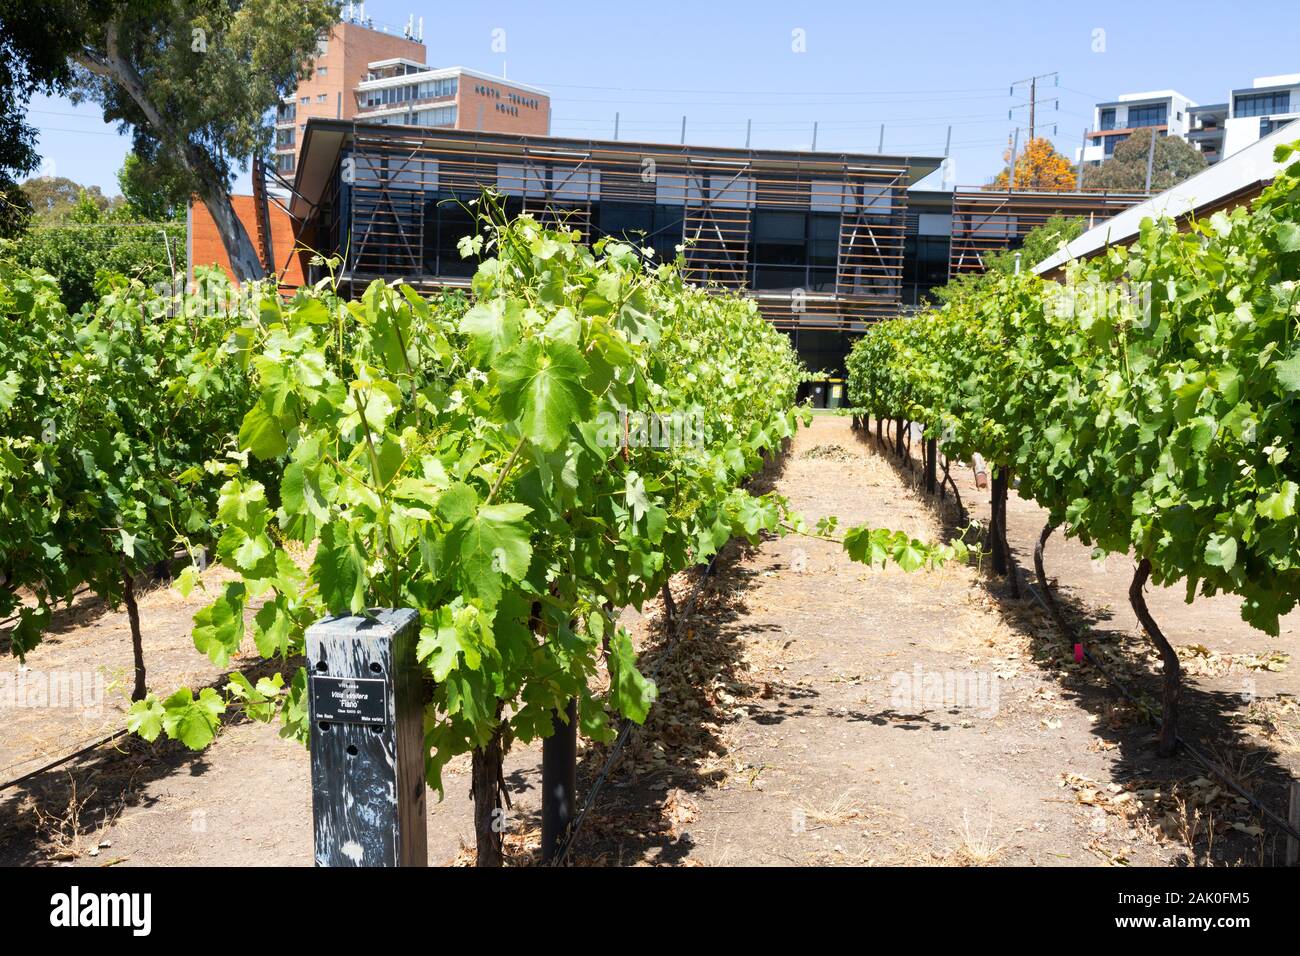 Das National Wine Centre, Adelaide, South Australia; Reben außerhalb des Zentrums von Ausbildung über Wein und Weinbau, Adelaide. Stockfoto